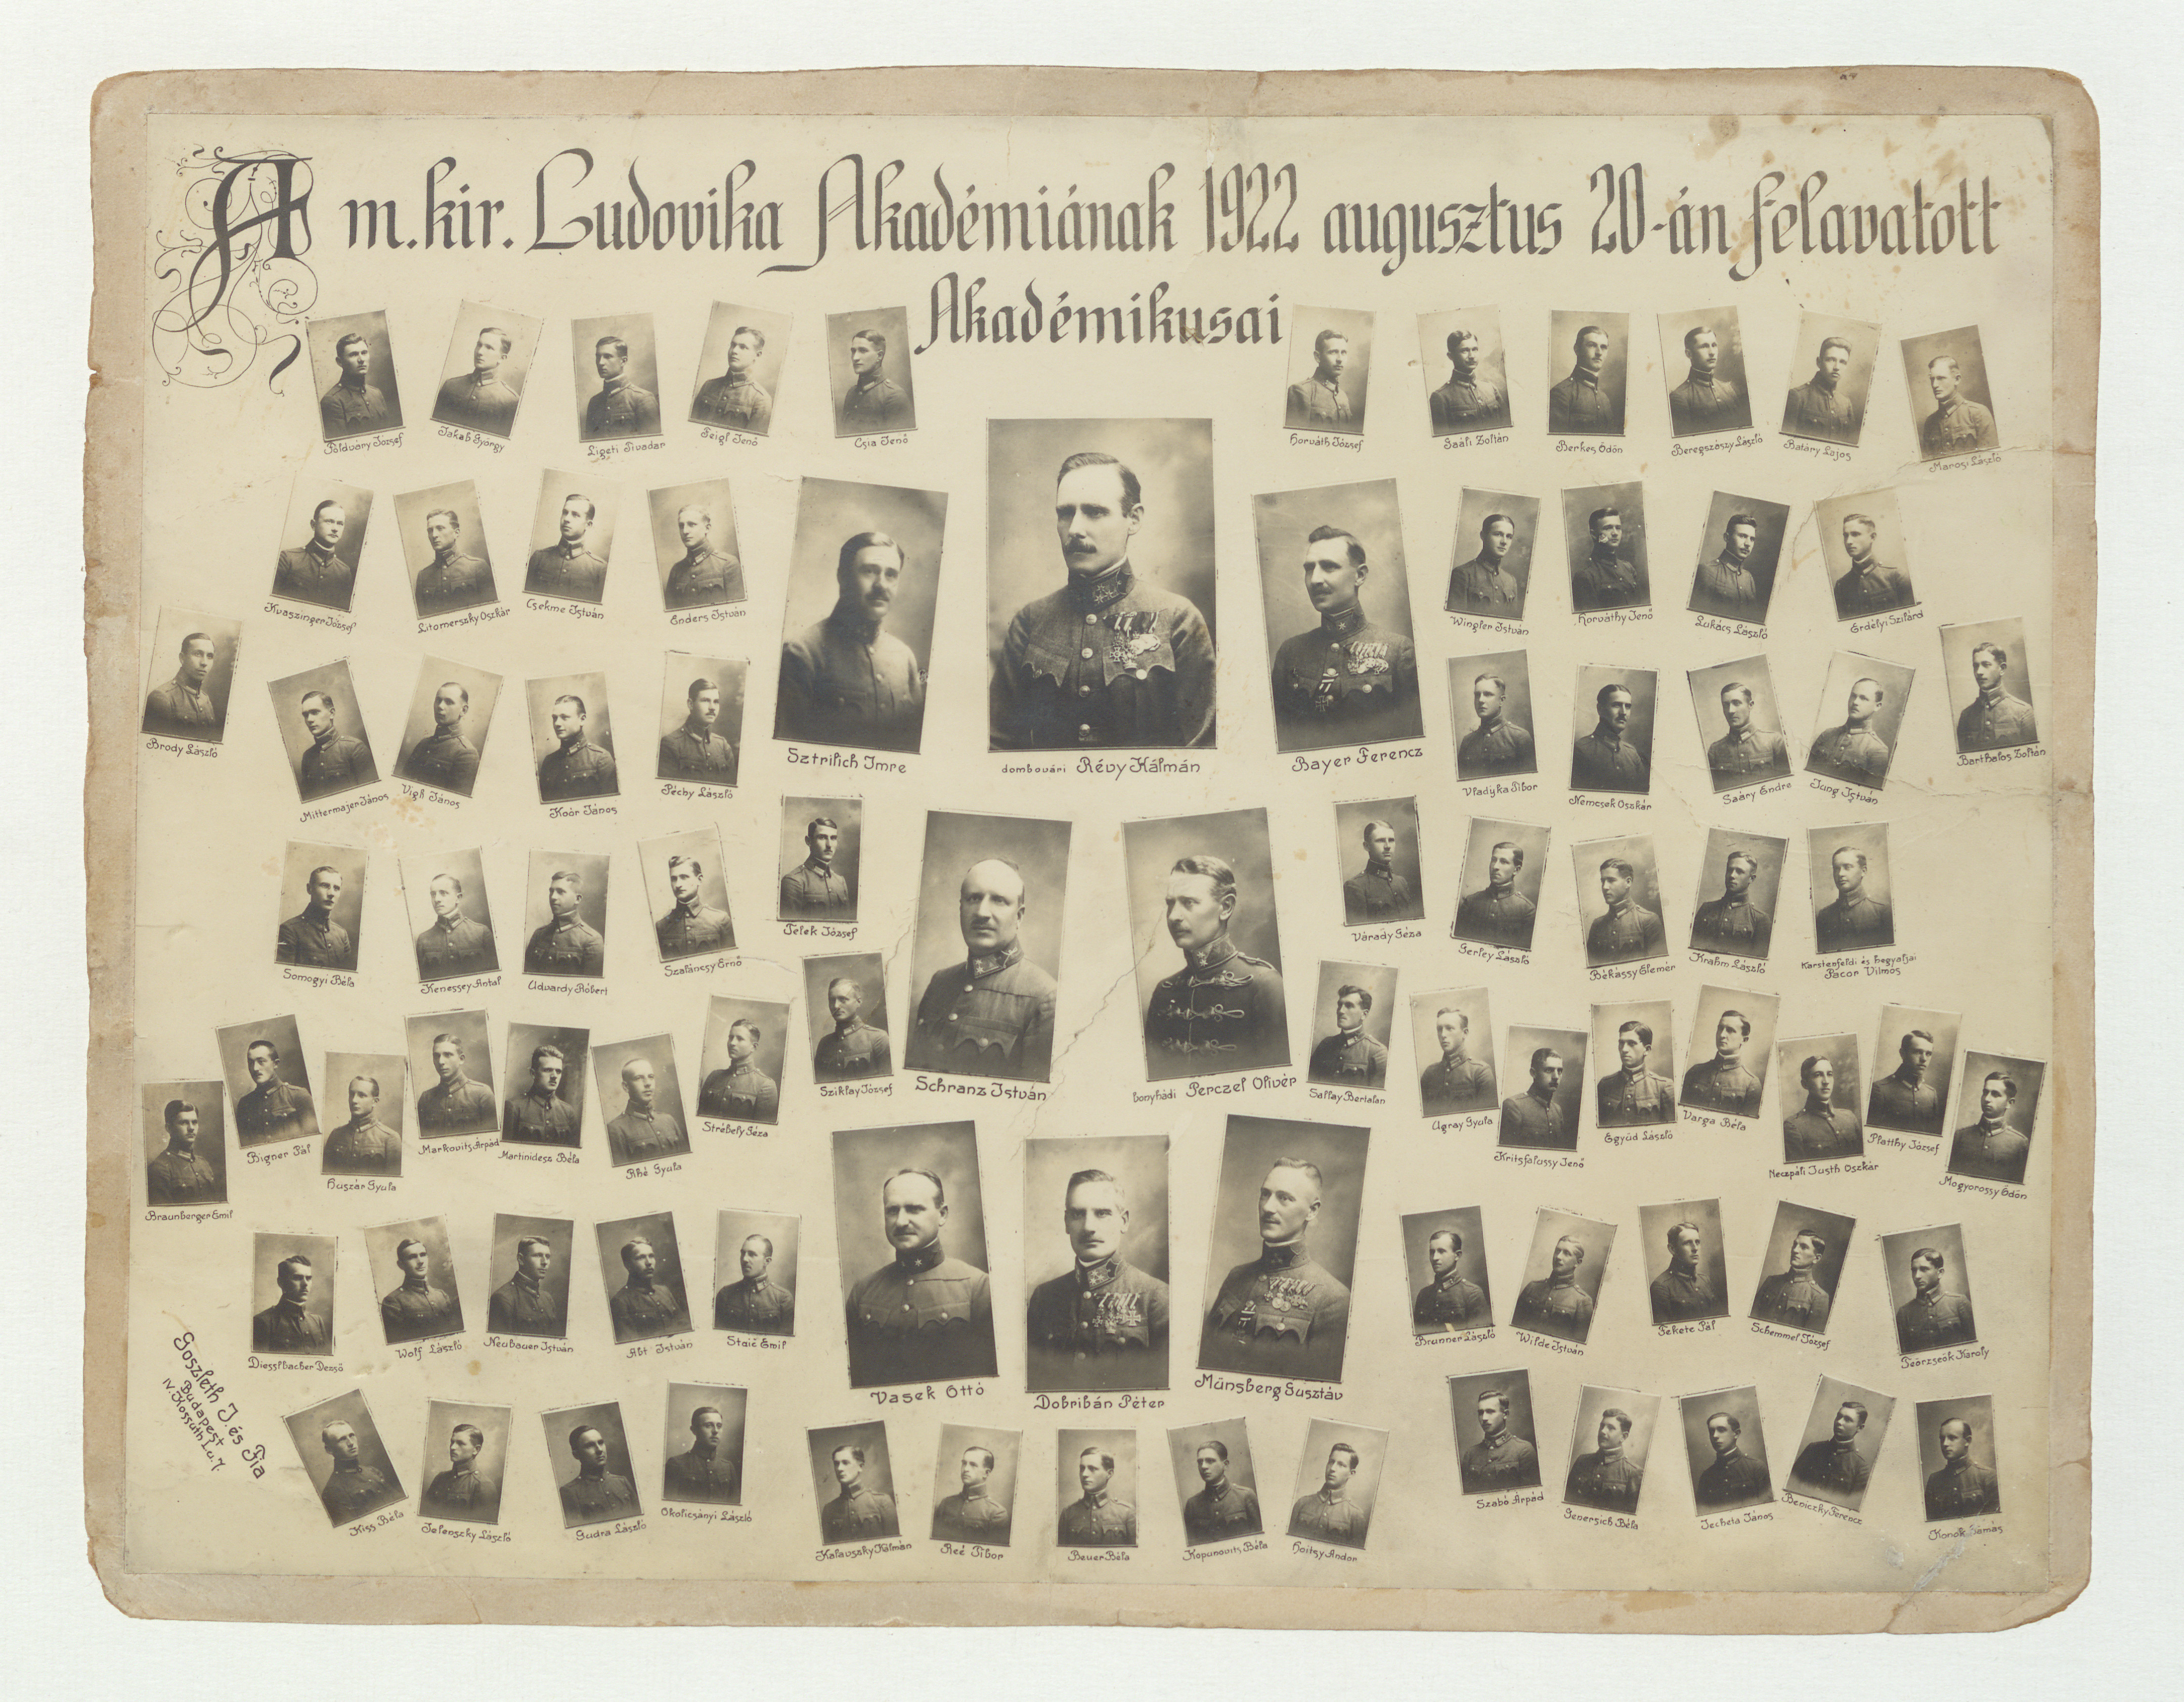 A m. kir. Ludovika Akadémiának 1922 augusztus 20-án felavatott Akadémikusai